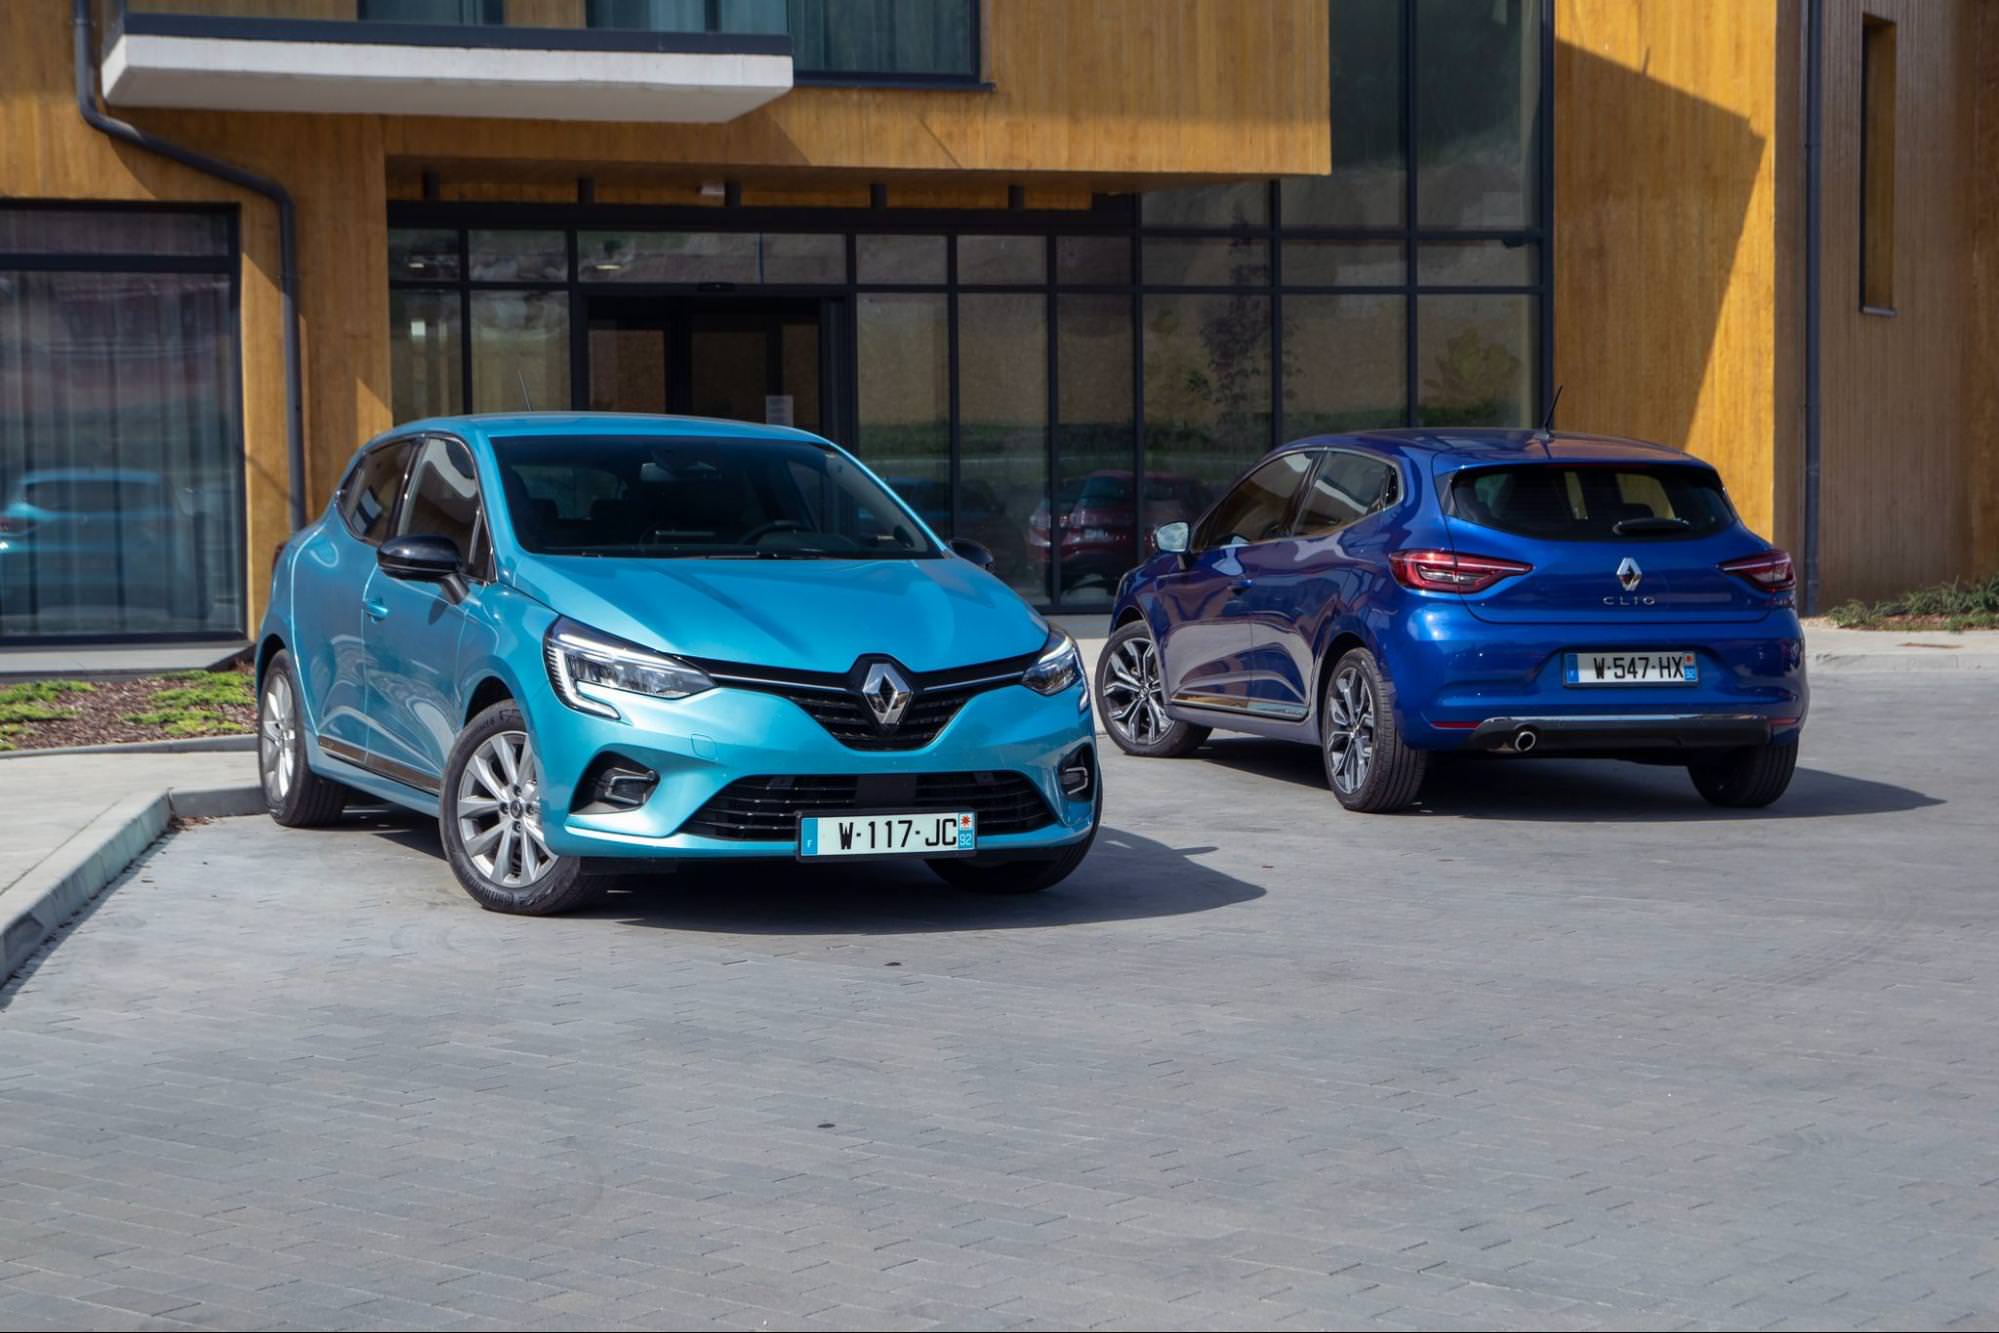 Голубой Renault Clio и темно-синий Renault Clio, припаркованные перед зданием, демонстрируют популярные французские модели автомобилей.